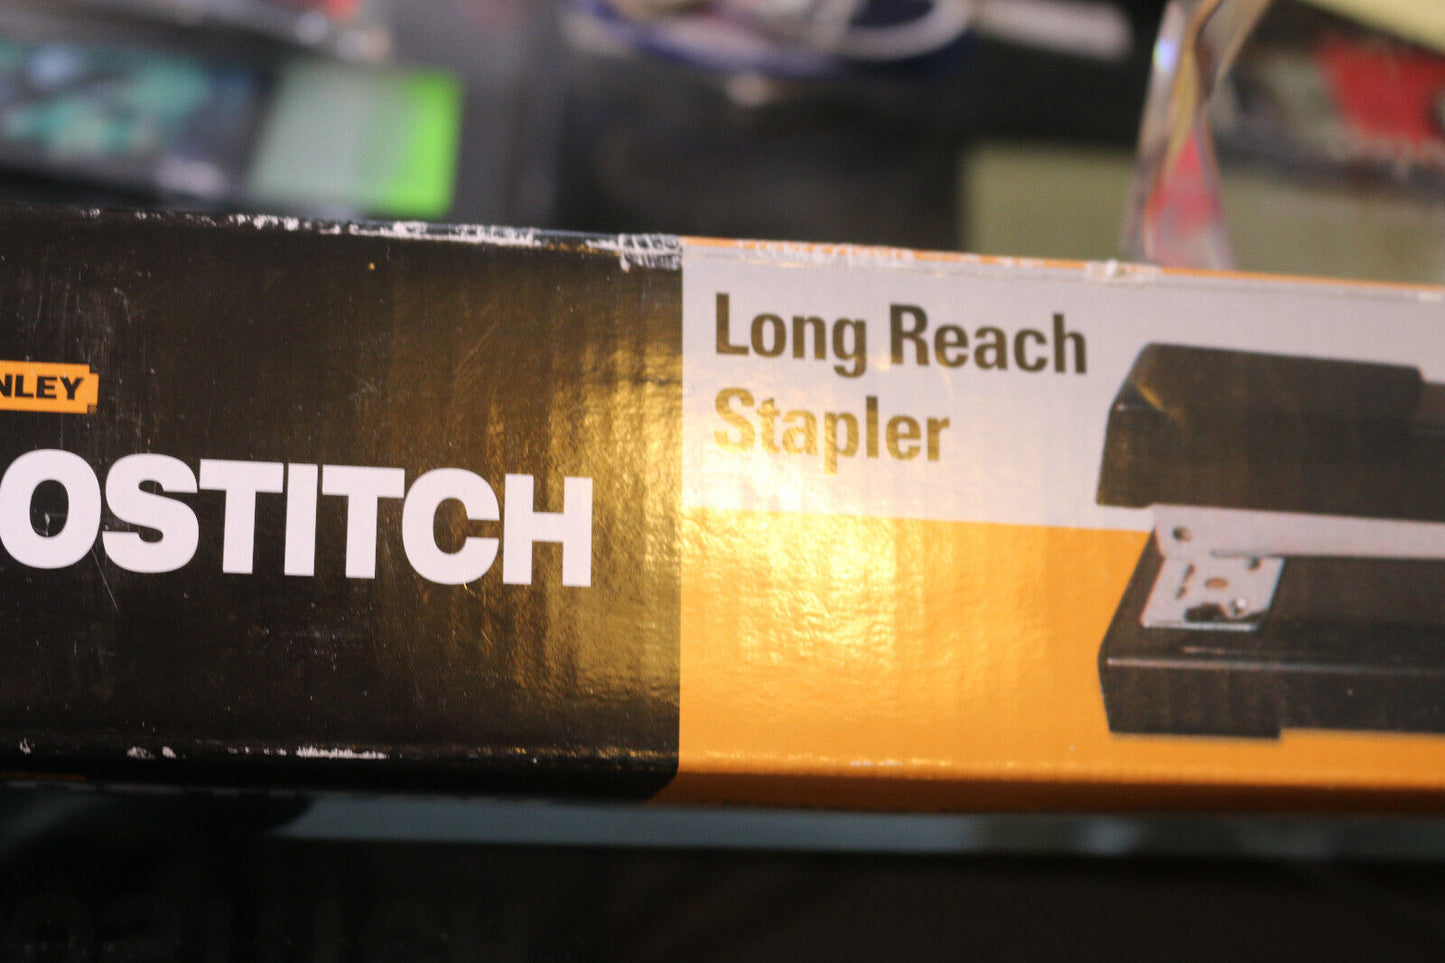 Stanley Stapler Bostitch 12" Long Reach Stapler Model  Box Included